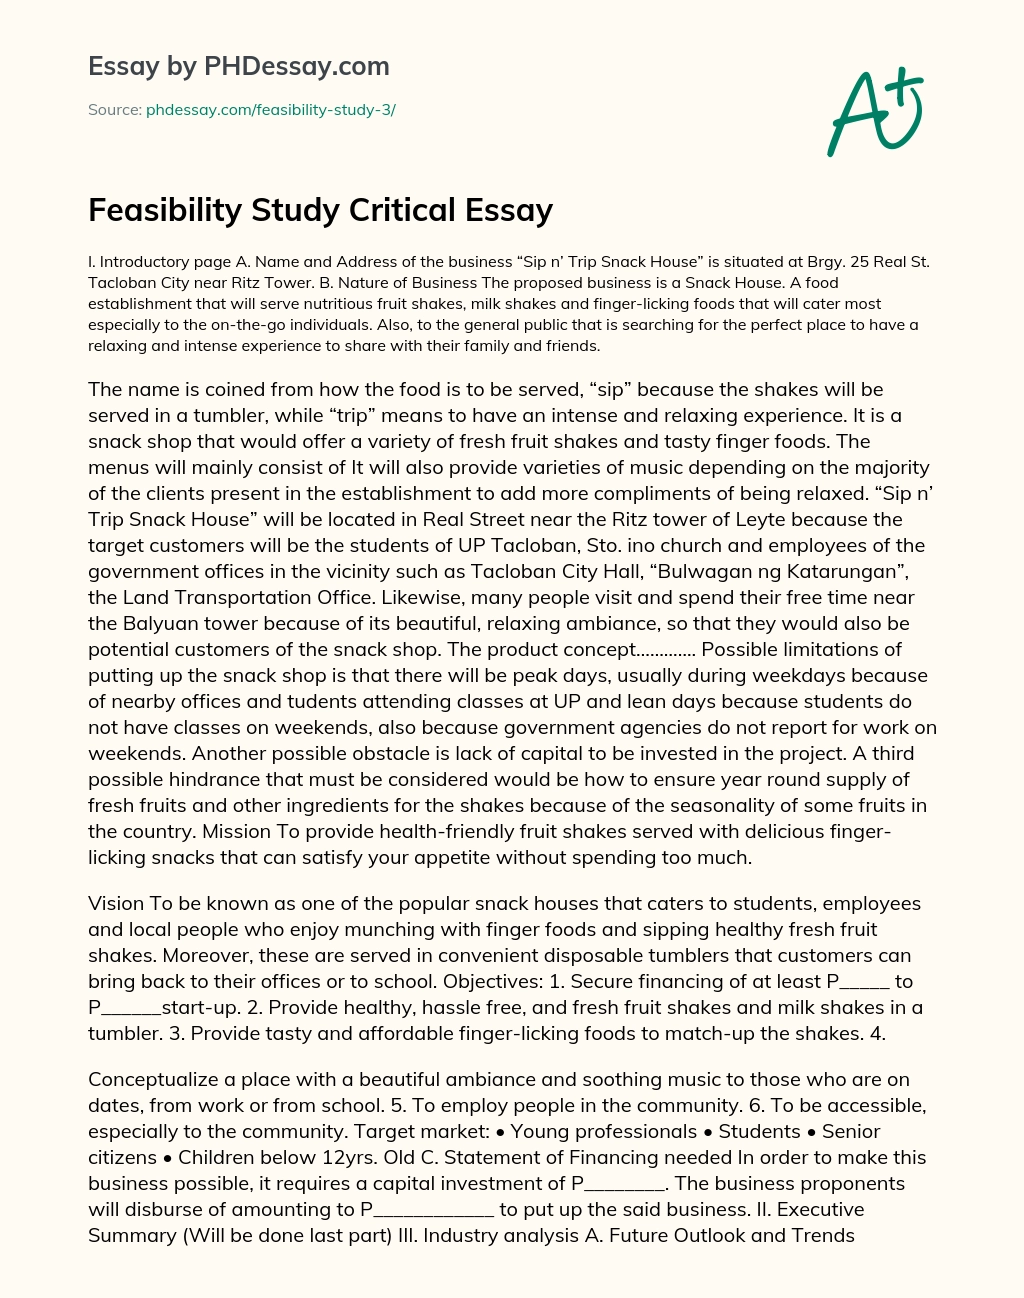 Feasibility Study Critical Essay essay